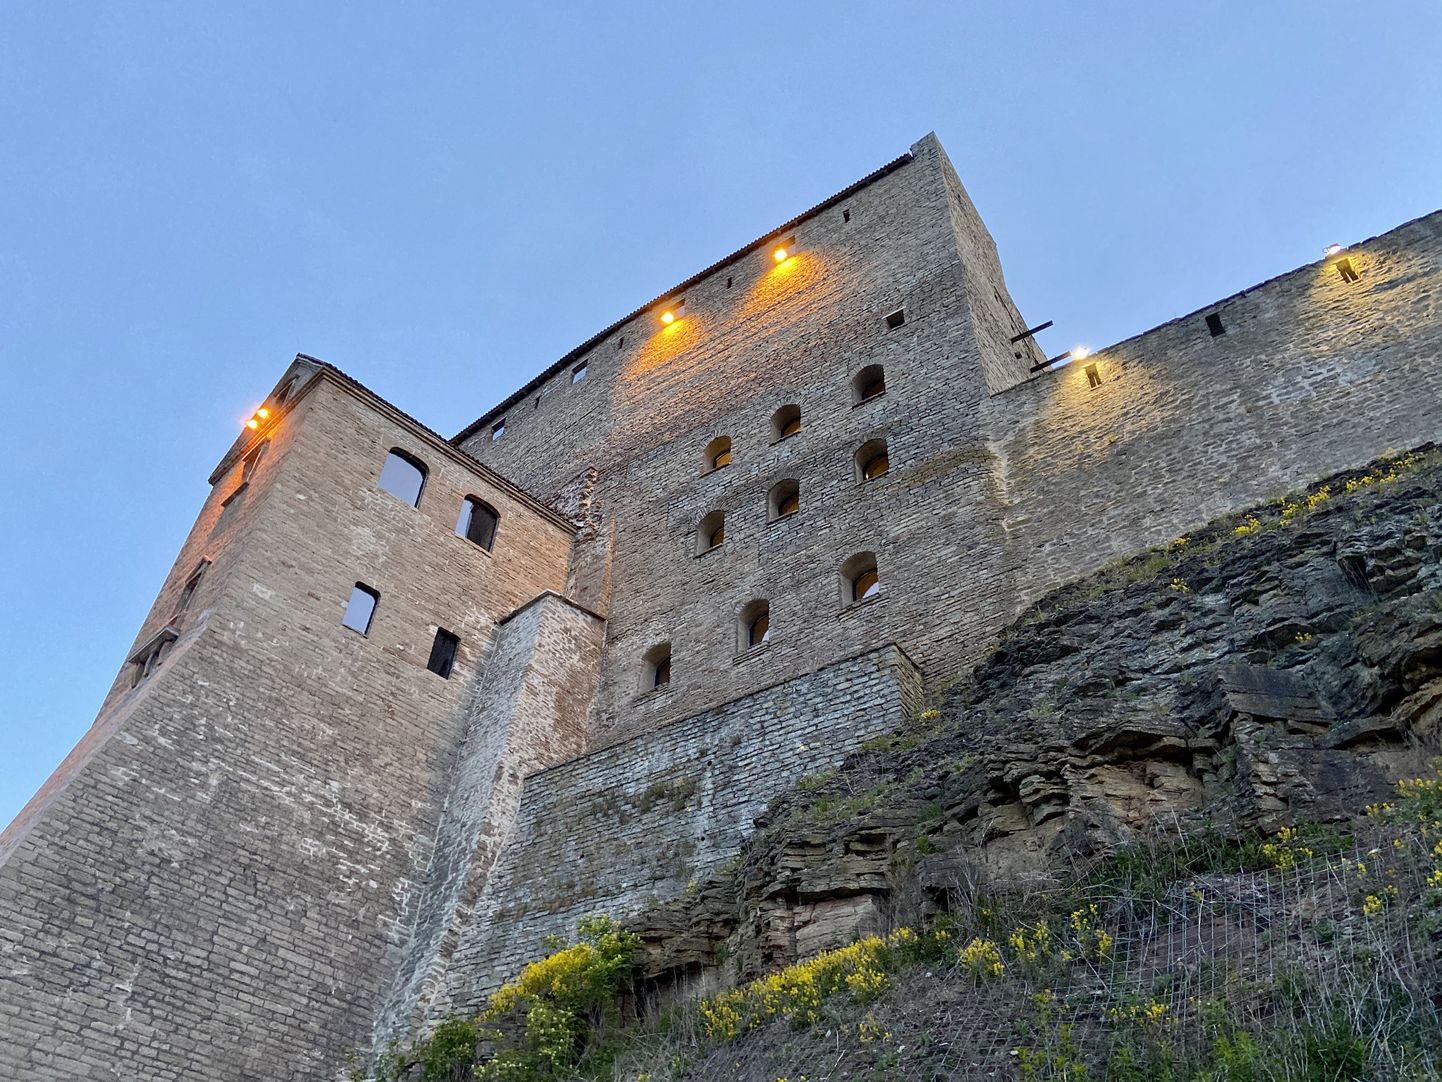 Внешние стены и колодезная башня восточного флигеля Нарвского замка, куда впервые попадут посетители, чтобы ознакомиться с новой постоянной экспозицией.